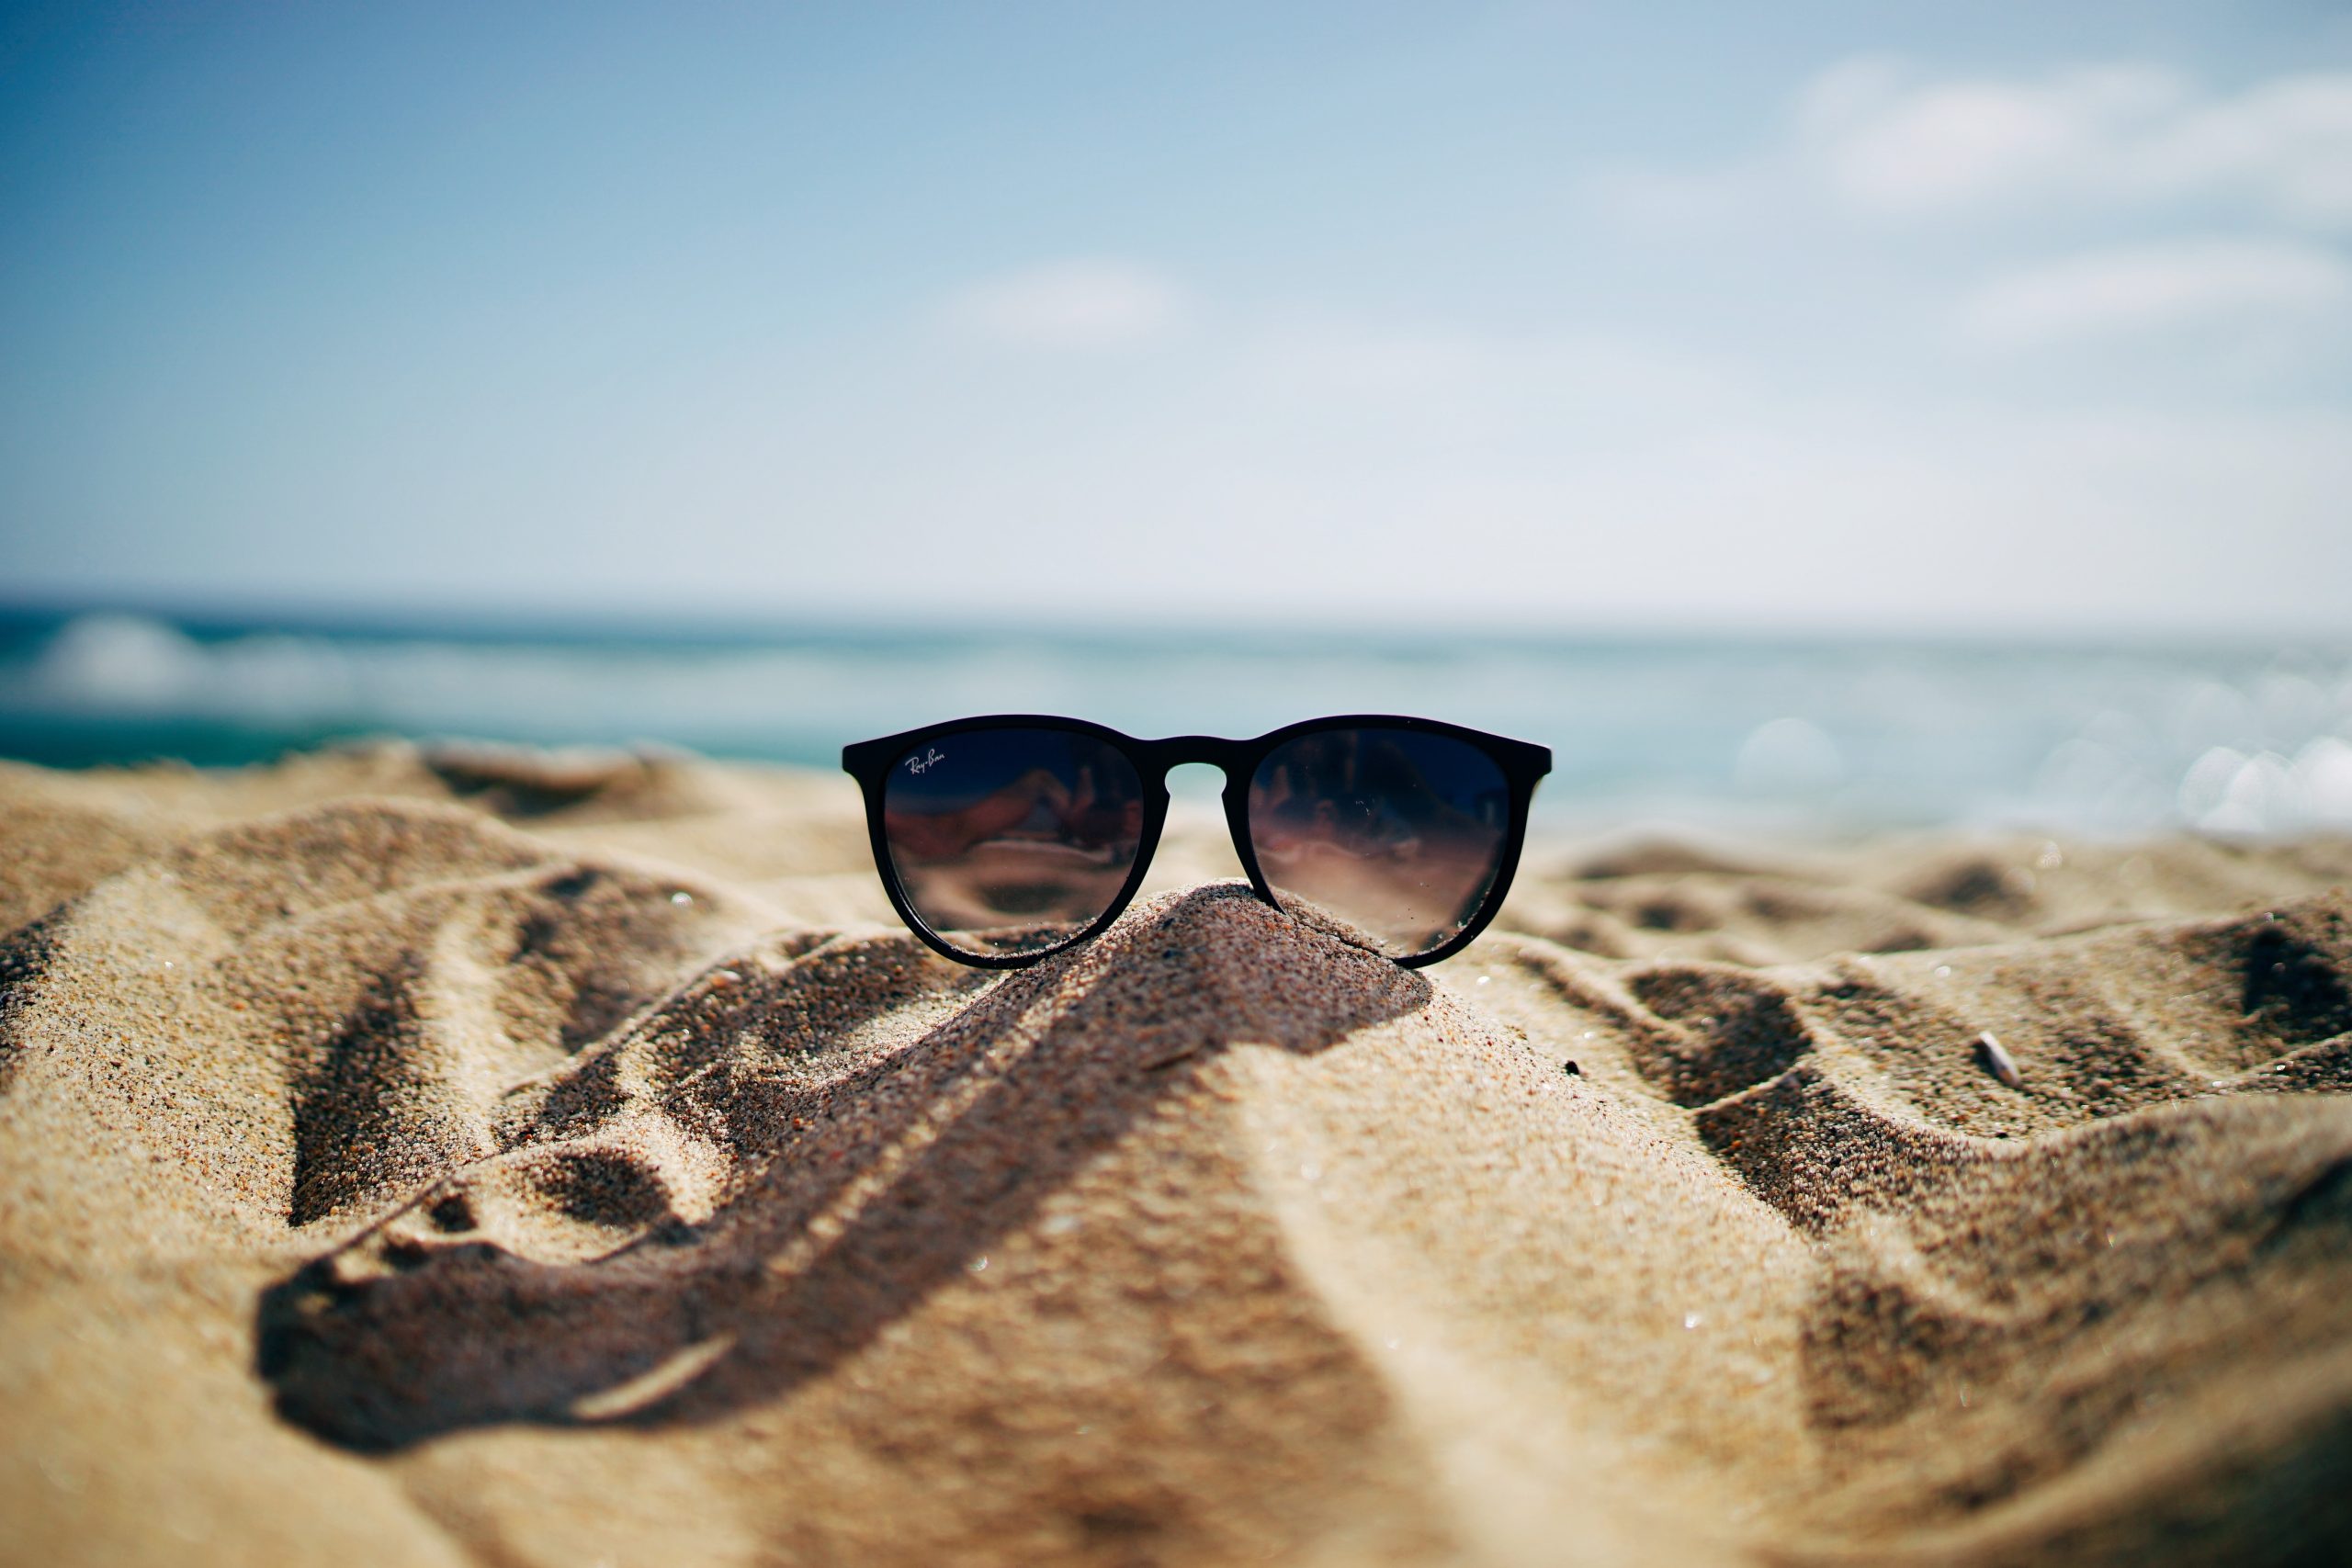 sunglasses on the sand of a sunny beach